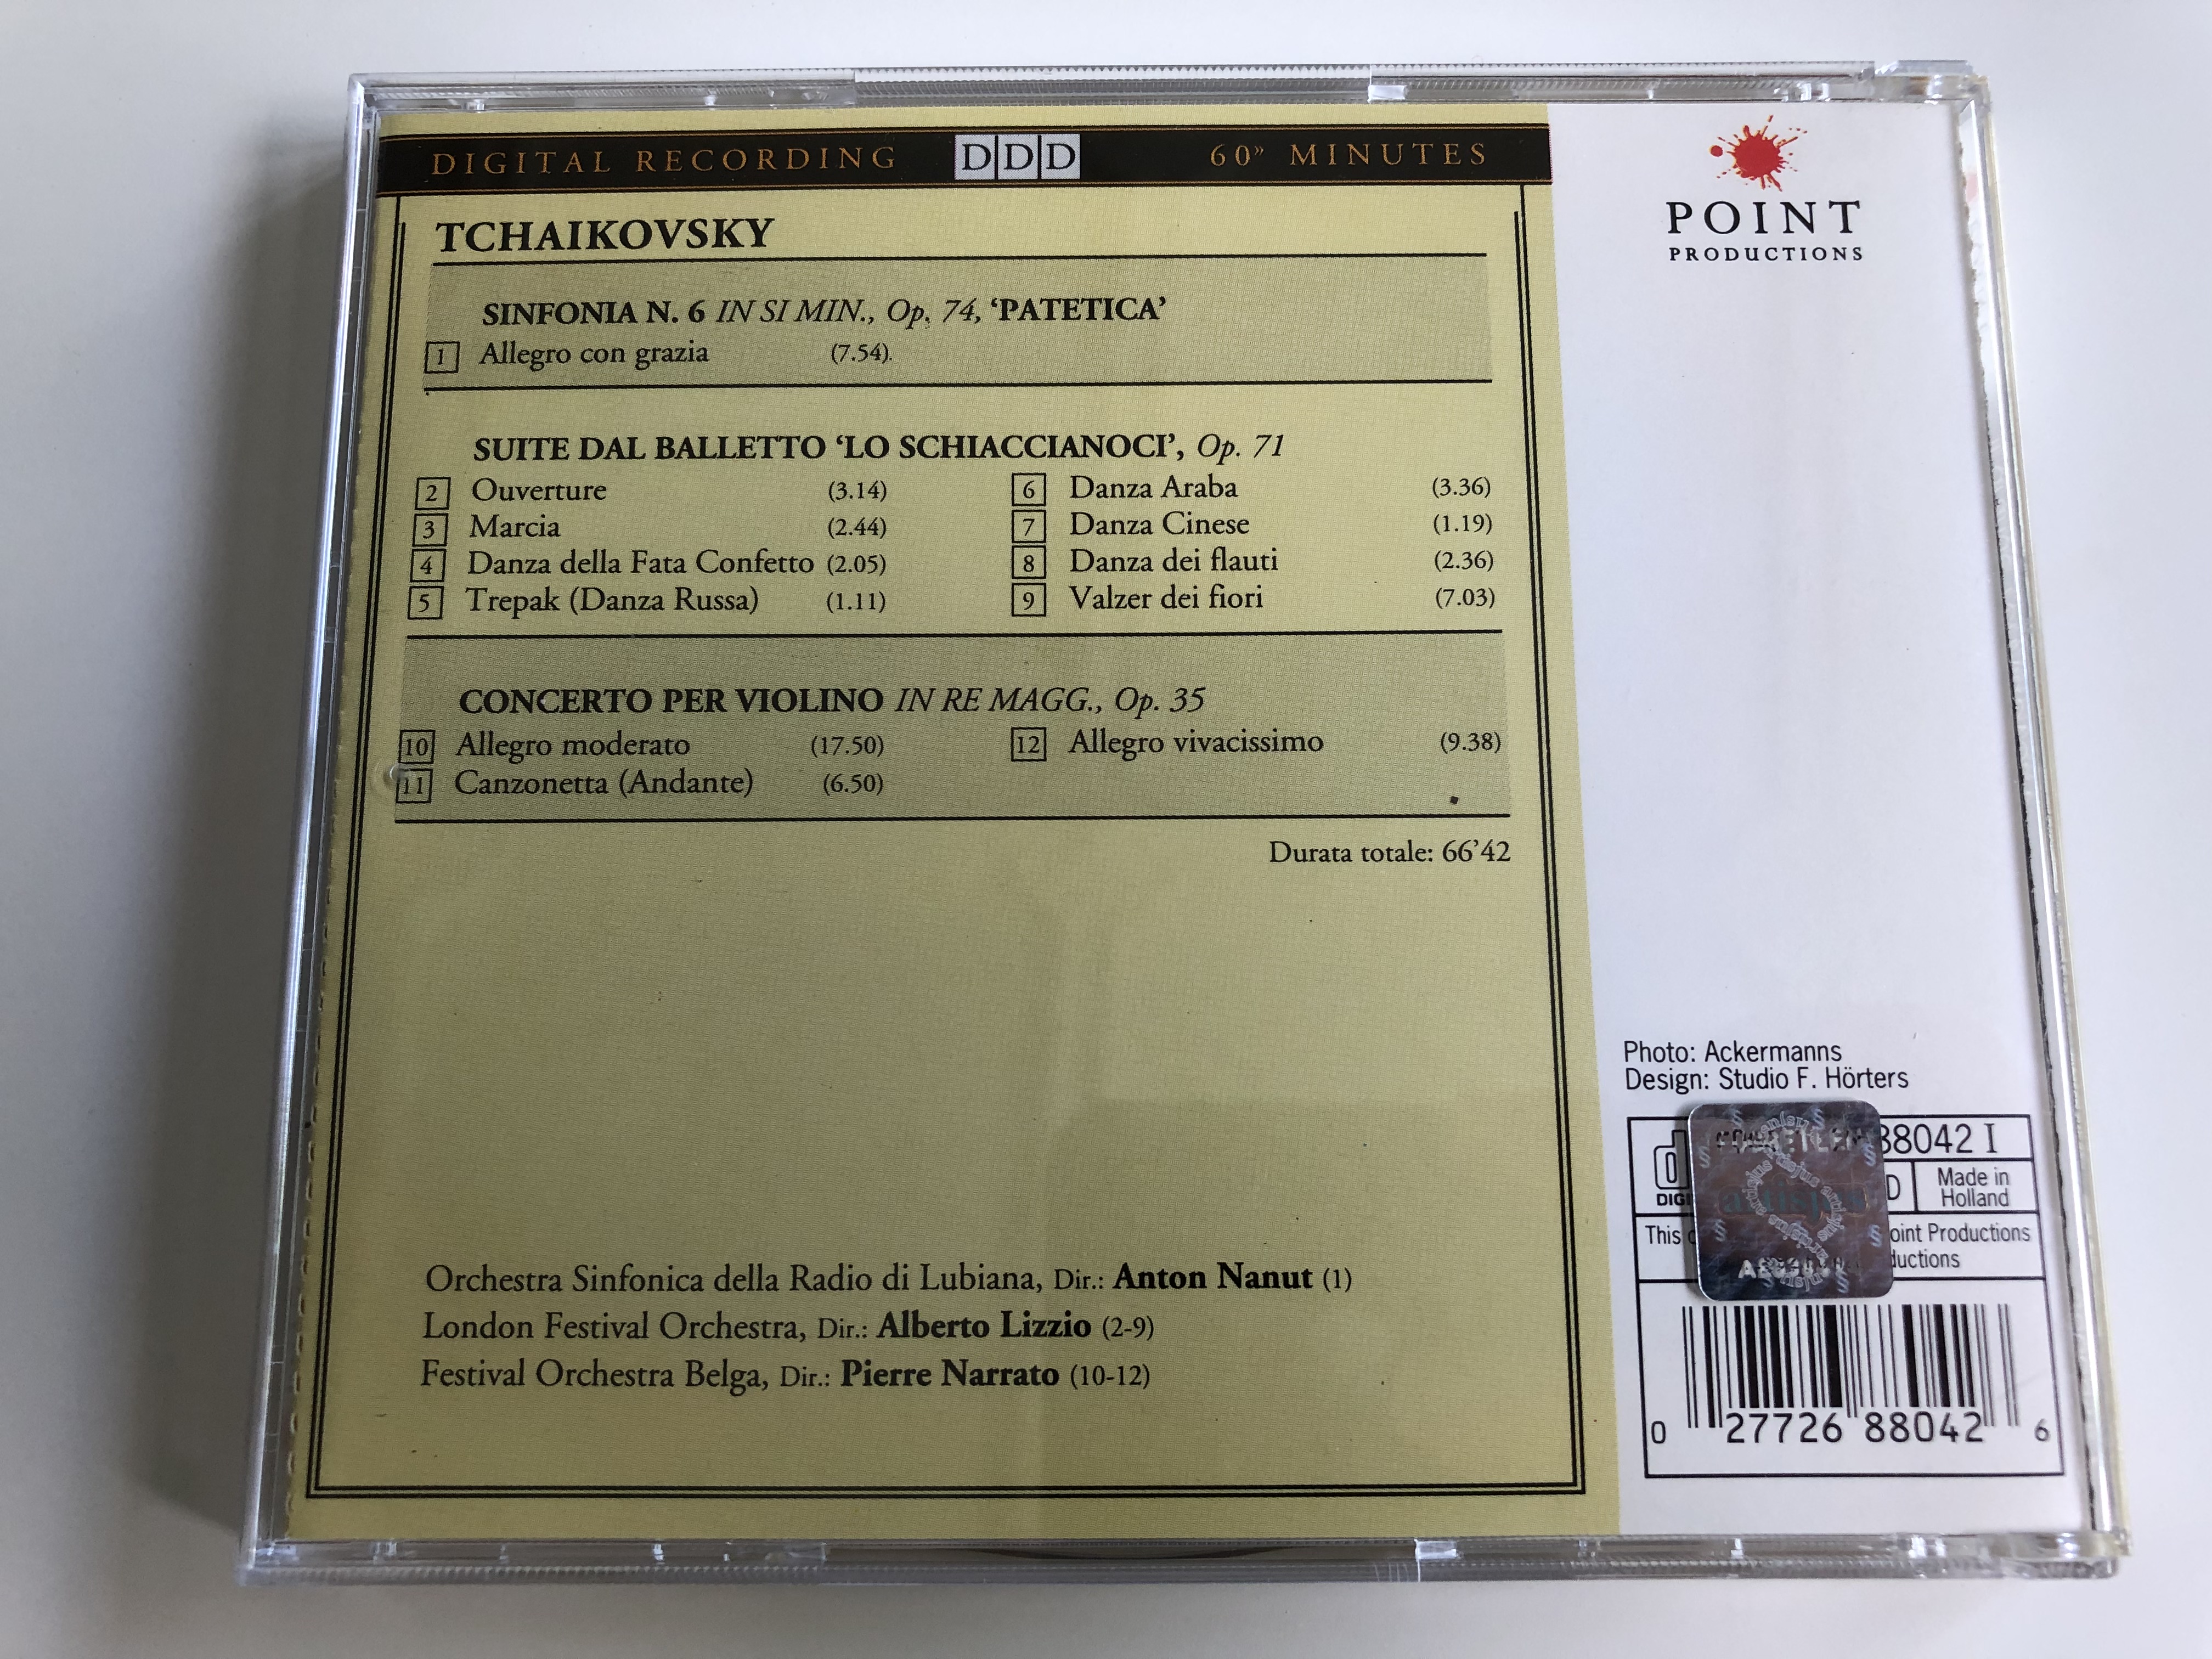 il-grande-tchaikovsky-simfonia-n.-6.-patetica-suite-dal-balletto-lo-schiaccianoci-concerto-per-violoino-il-meglio-della-musica-classica-audio-cd-1992-3-.jpg